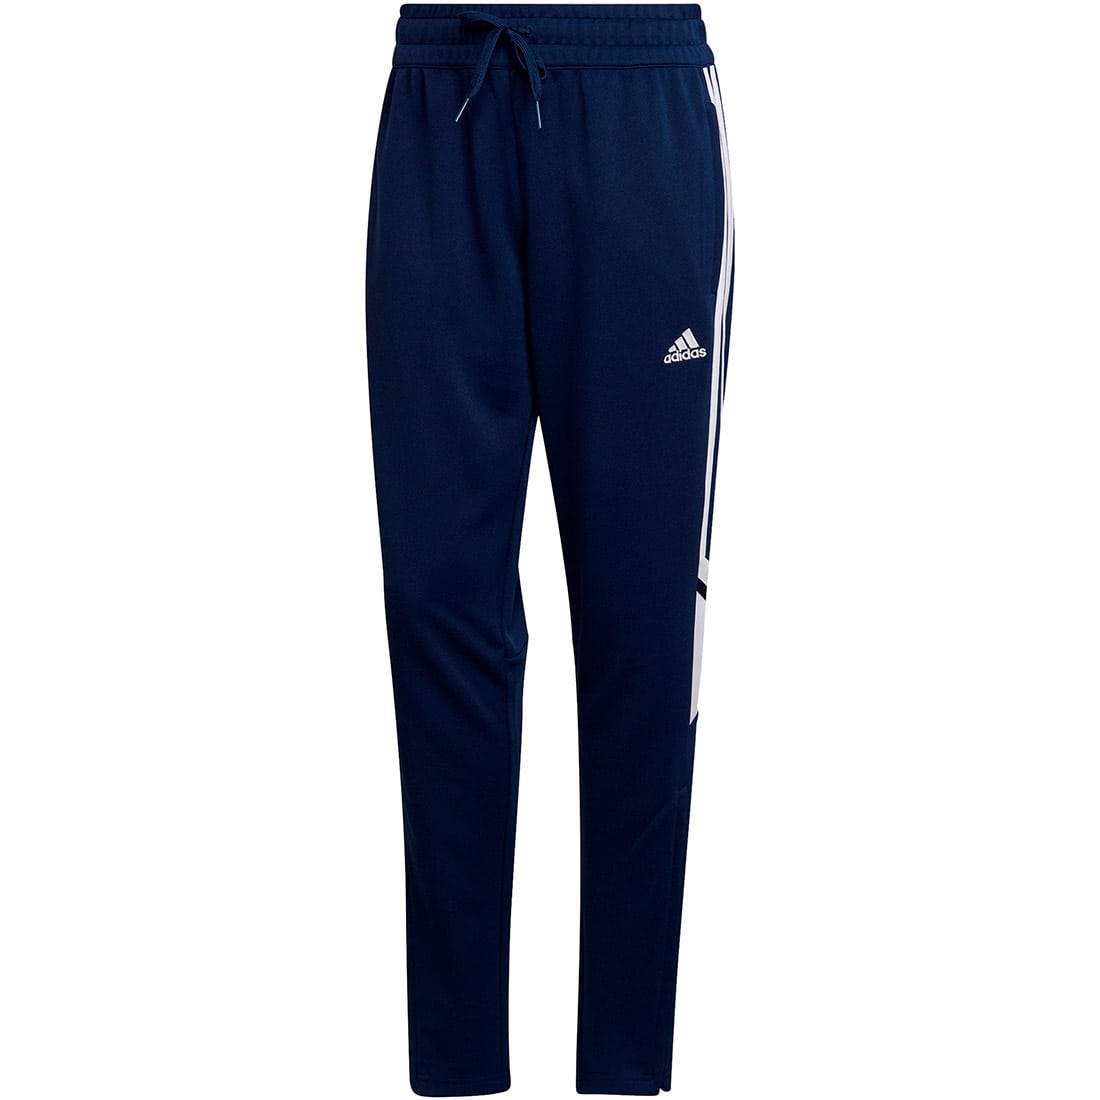 Adidas Damen Trainingshose blau-weiß 22 Condivo kaufen online